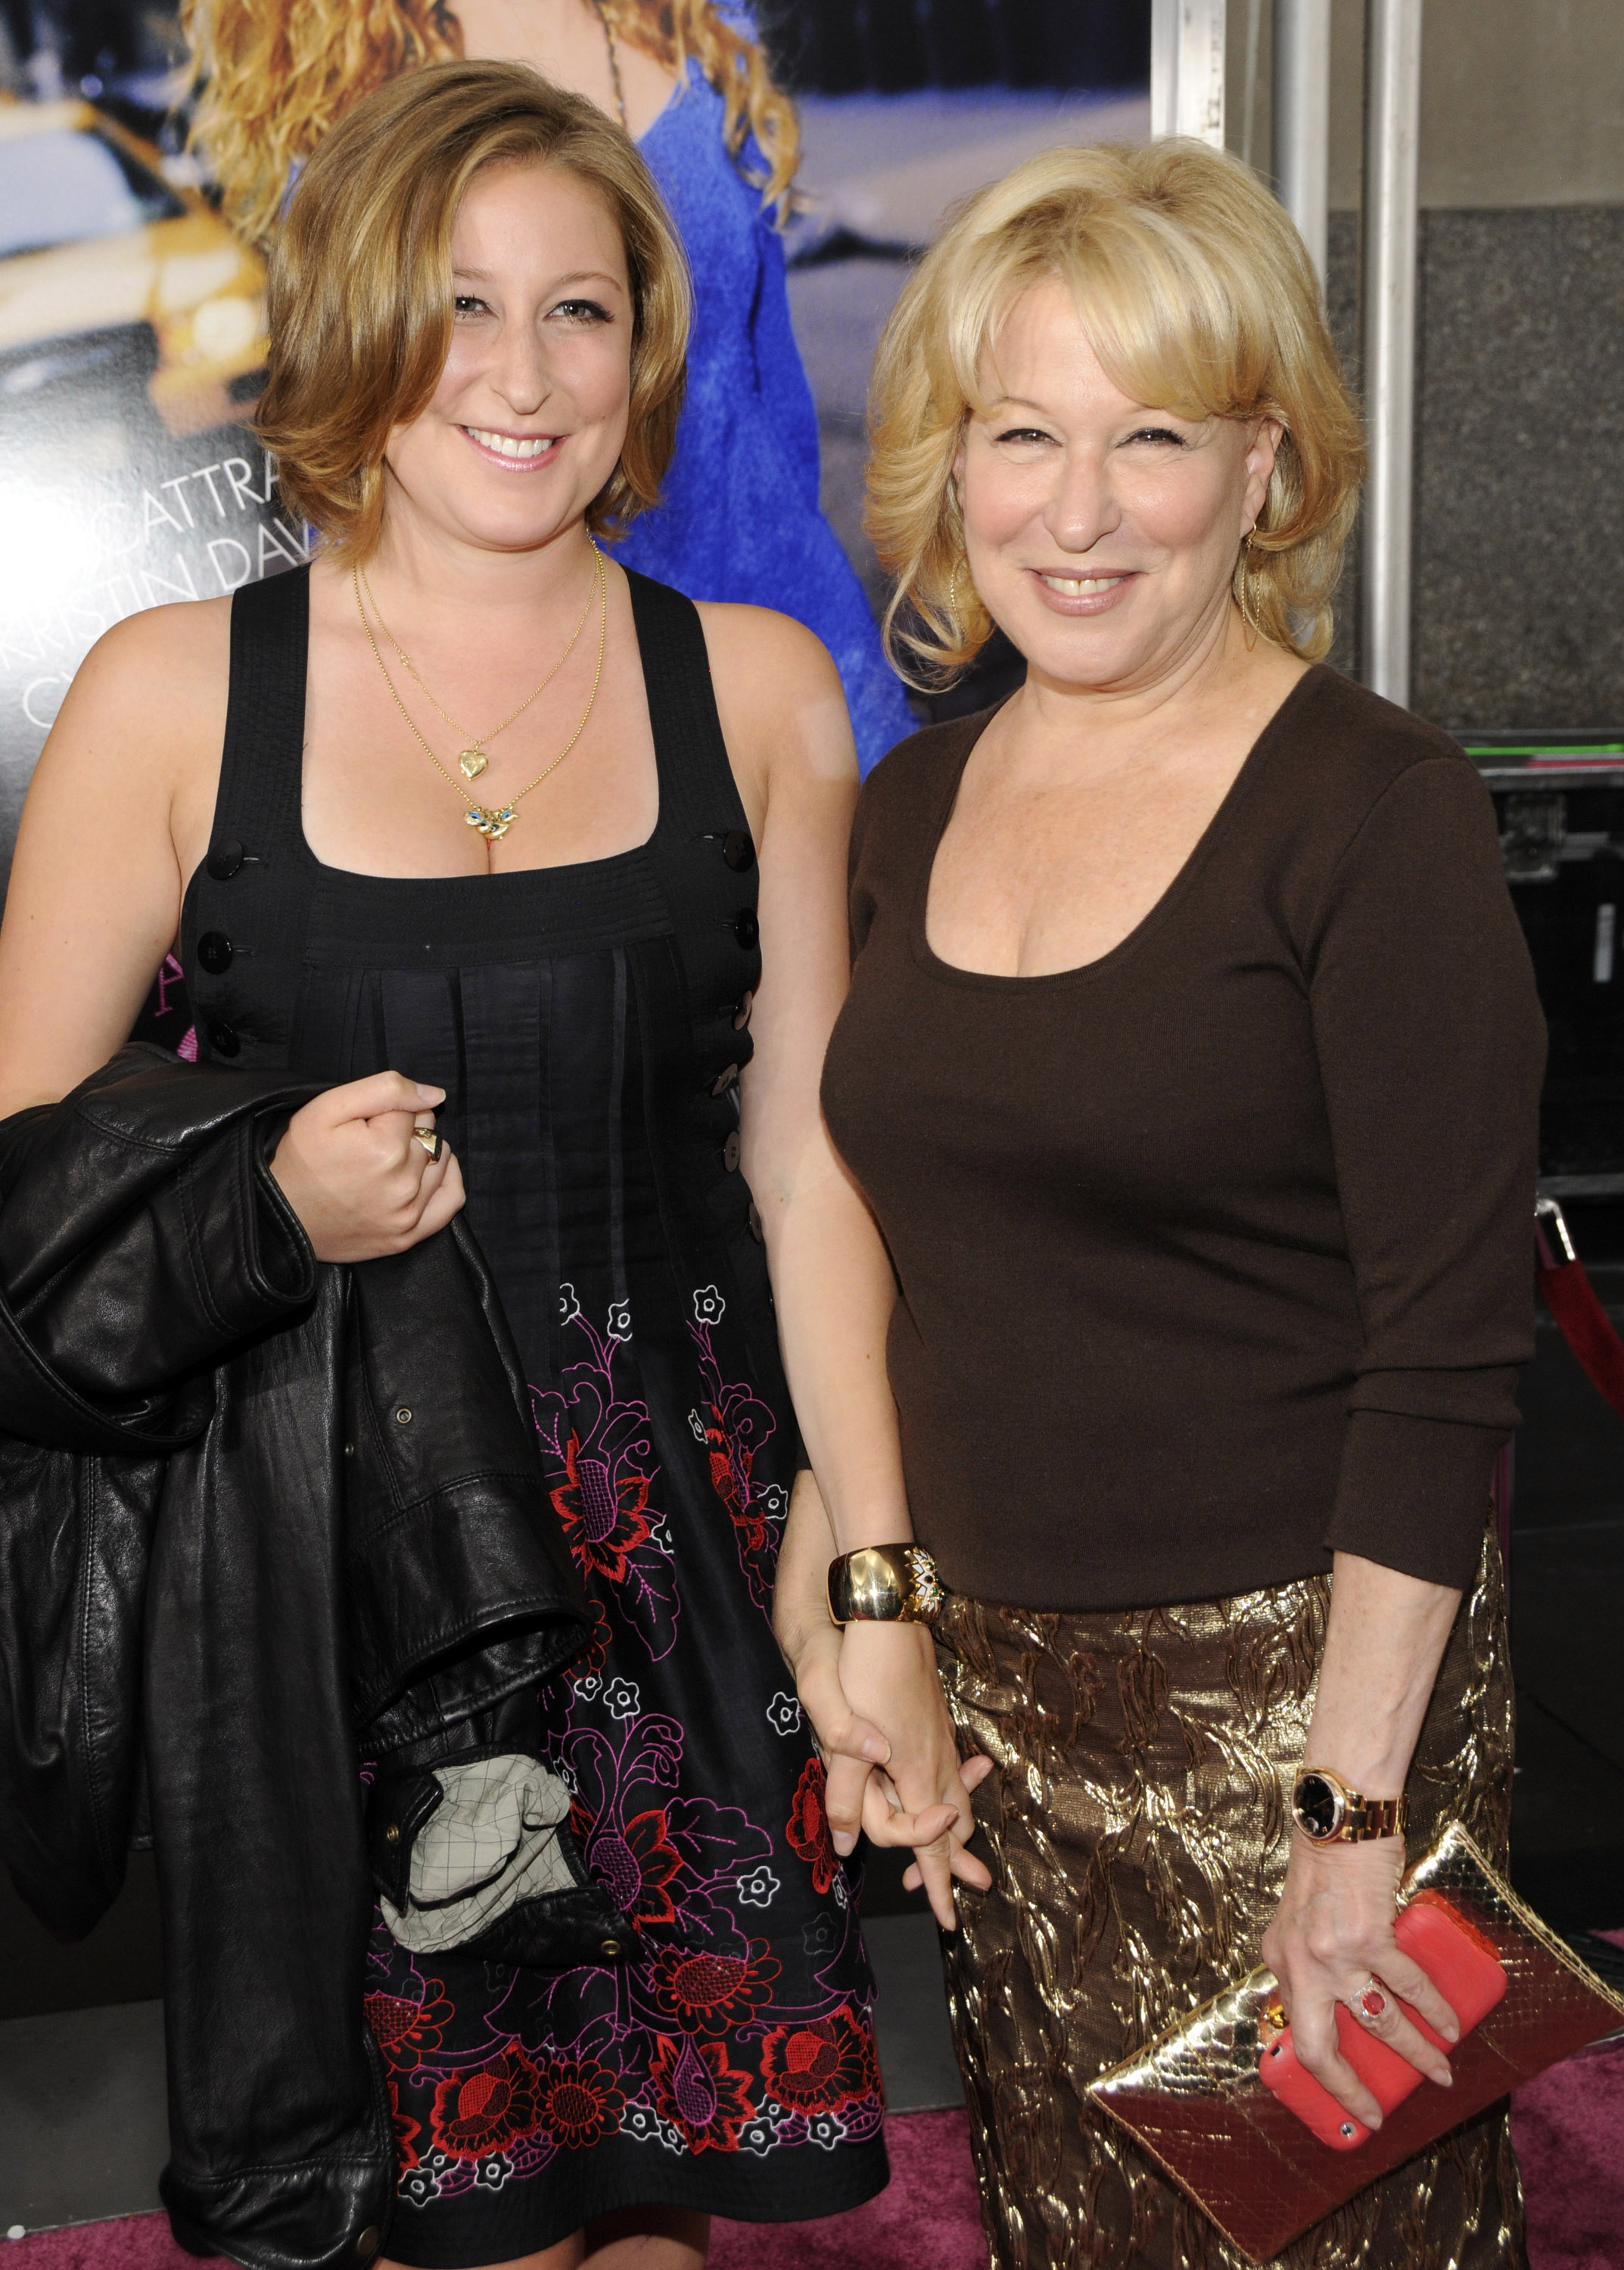 Sophie von Haselberg und Mutter Bette Midler besuchen die Premiere von "Sex and the City": The Movie" am 27. Mai 2008 in New York City | Quelle: Getty Images